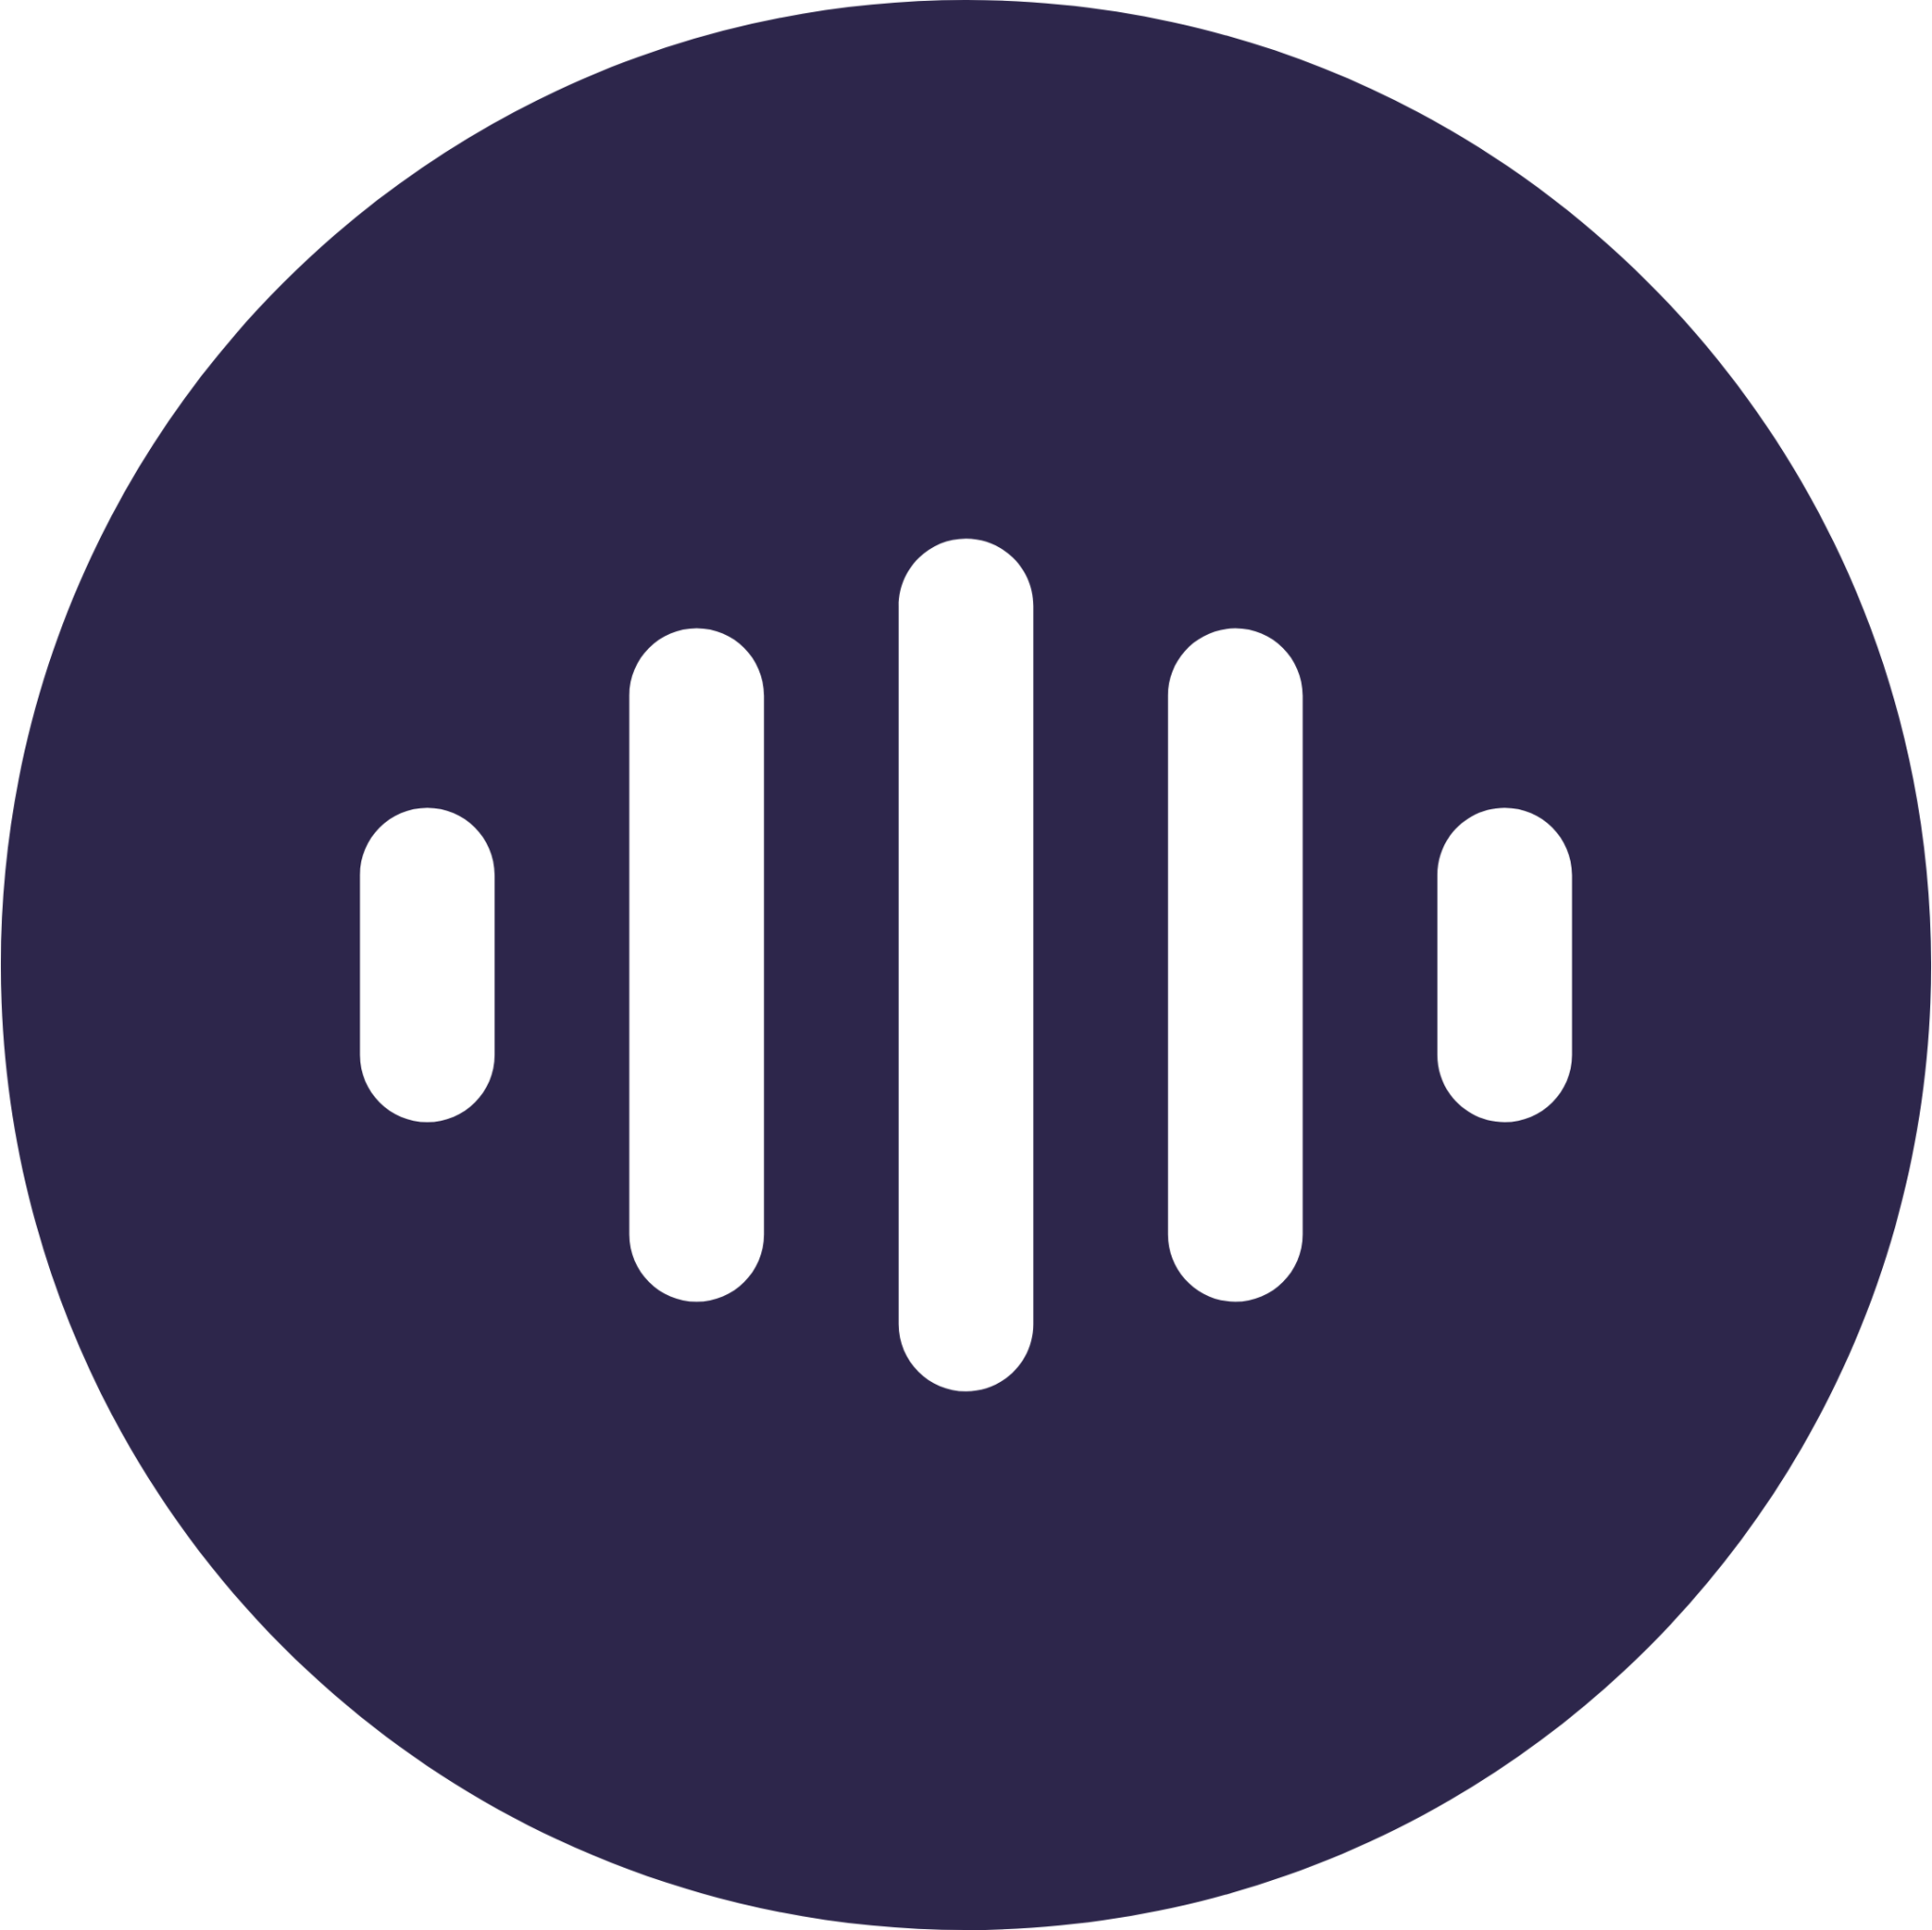 voice circle icon